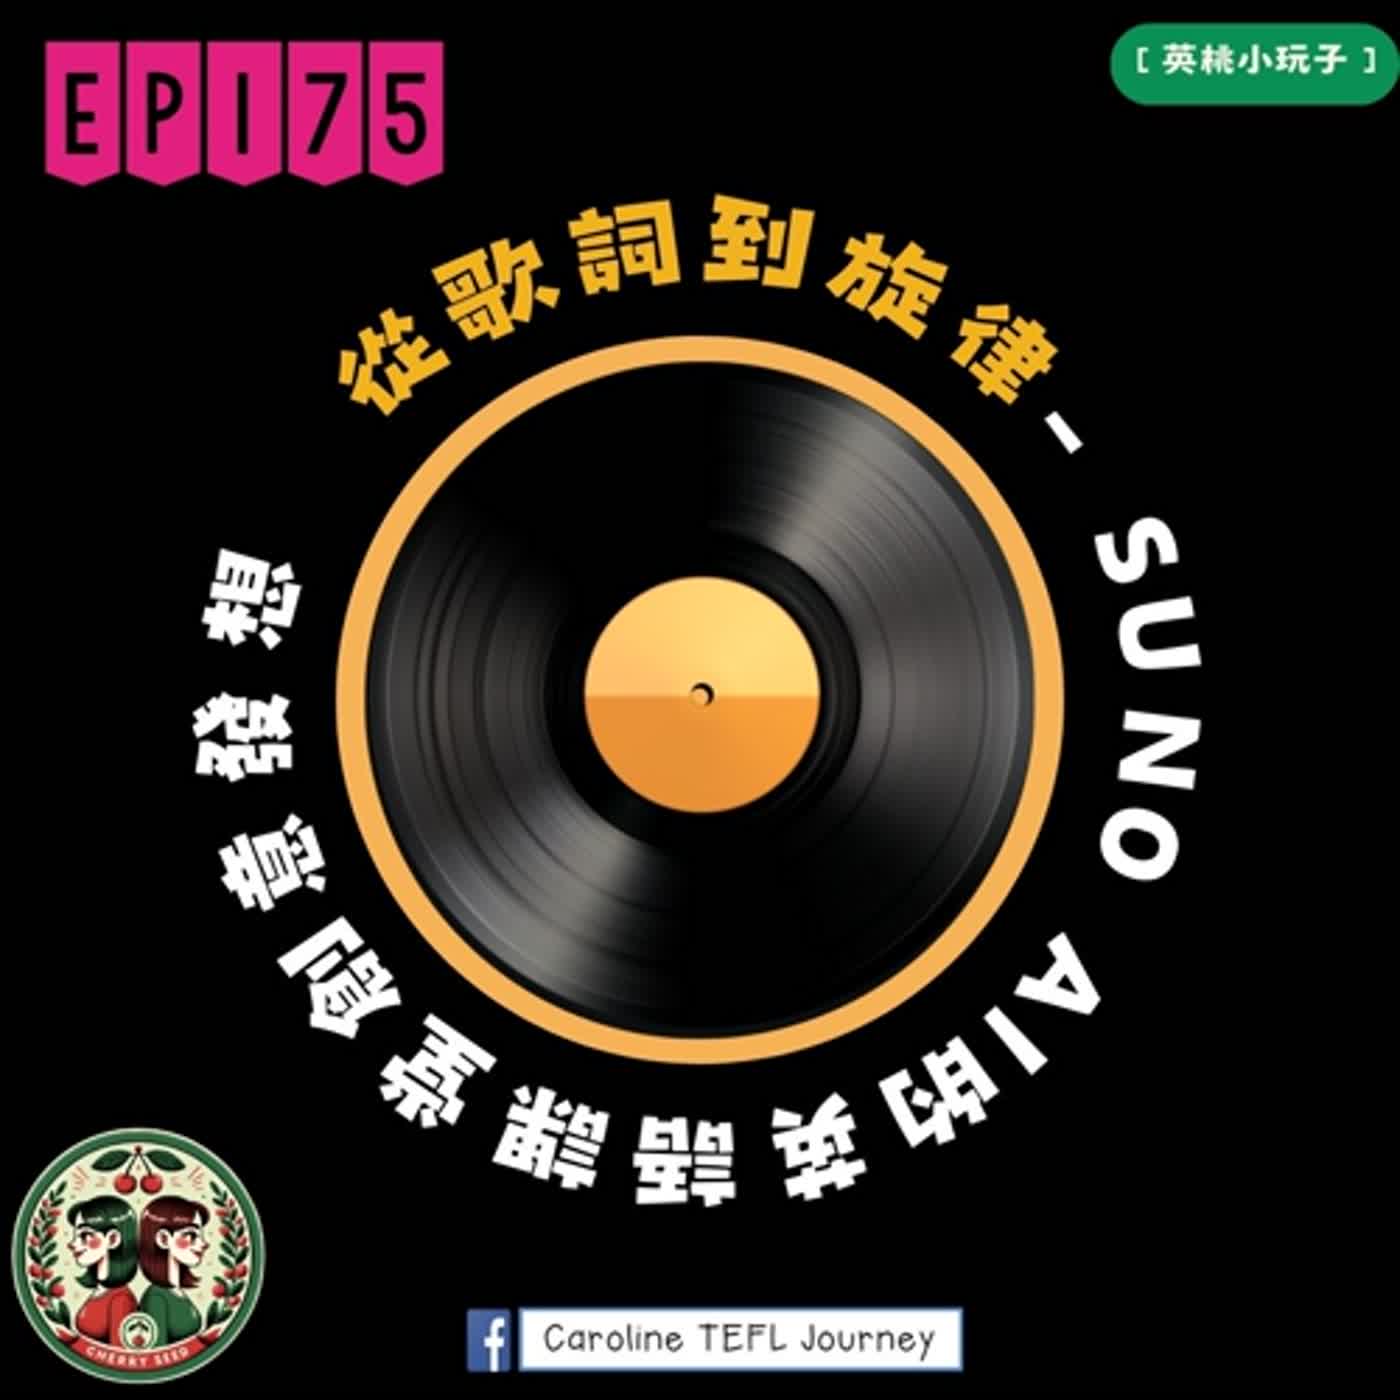 【英桃小玩子】EP175 從歌詞到旋律:Suno AI音樂的英語課堂創意發想